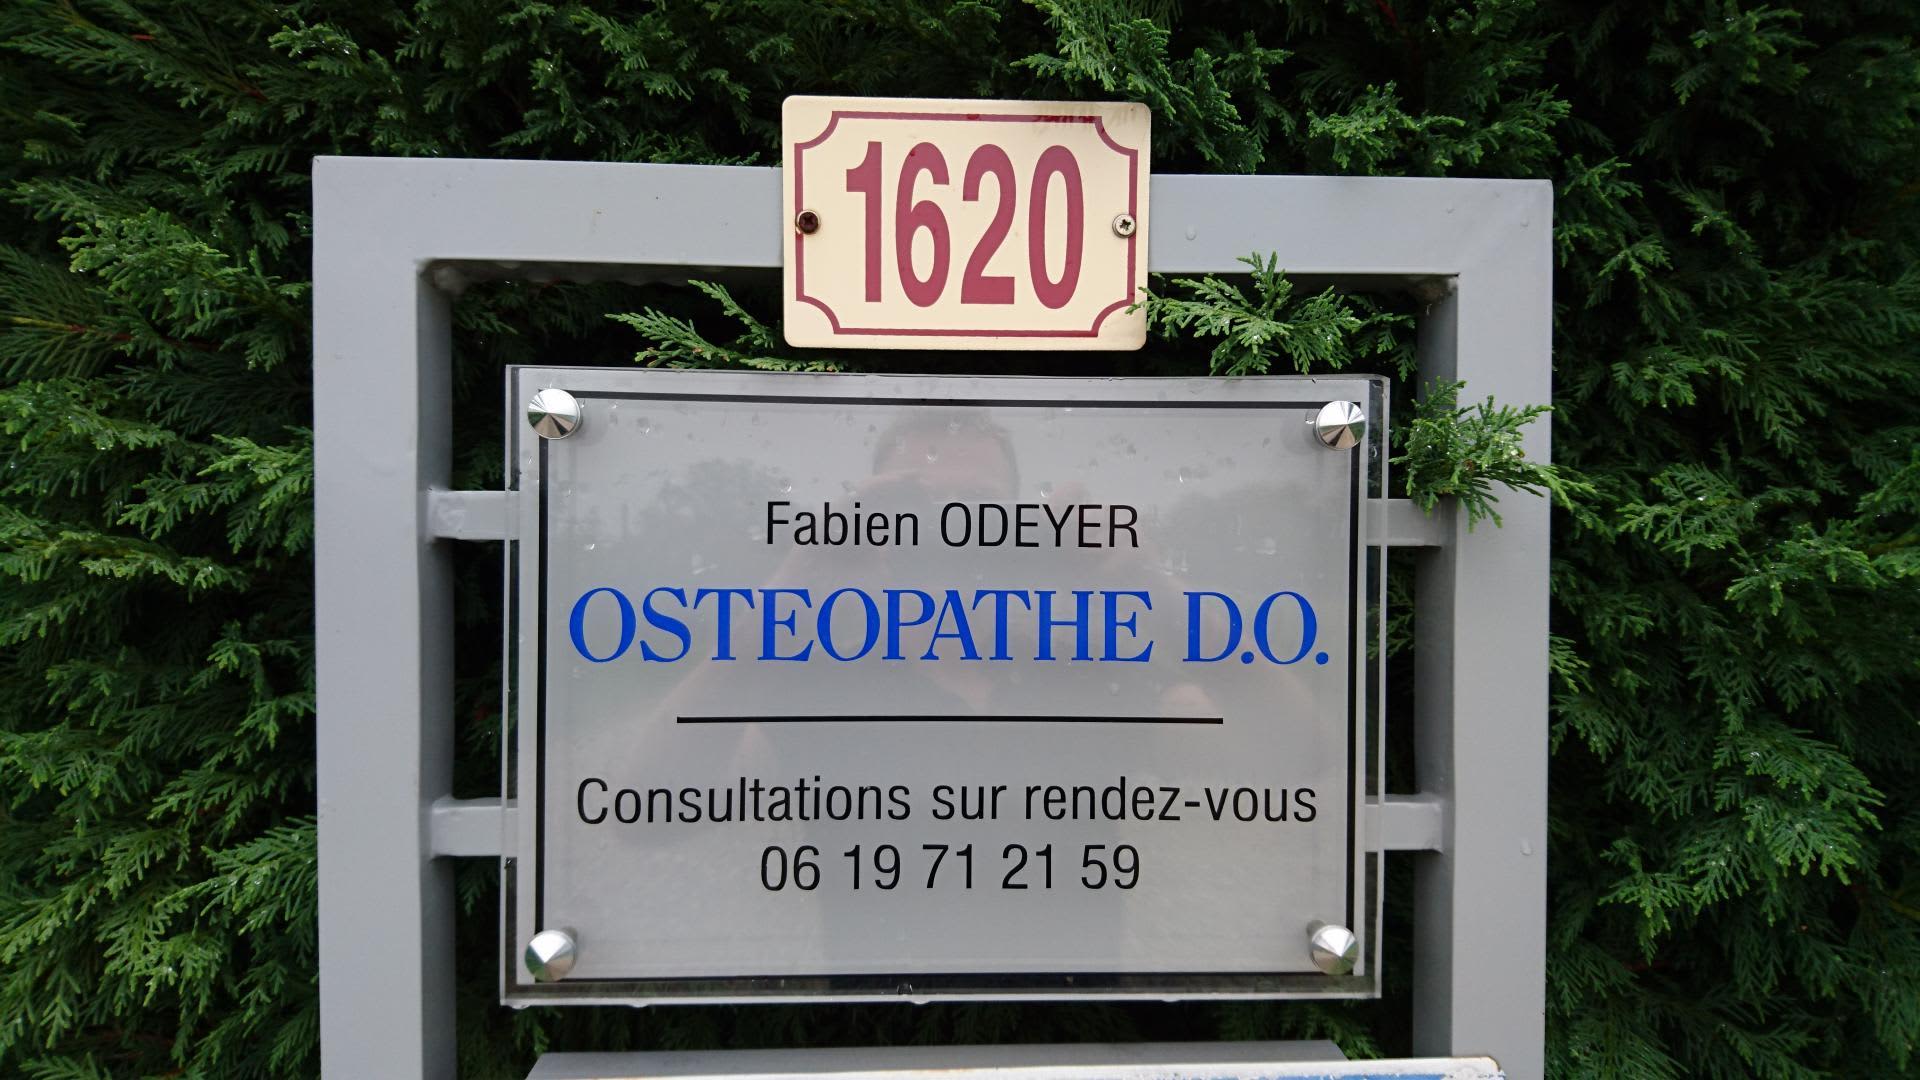 Fabien ODEYER, votre ostéopathe à Chatillon Saint jean vous présente un  livre